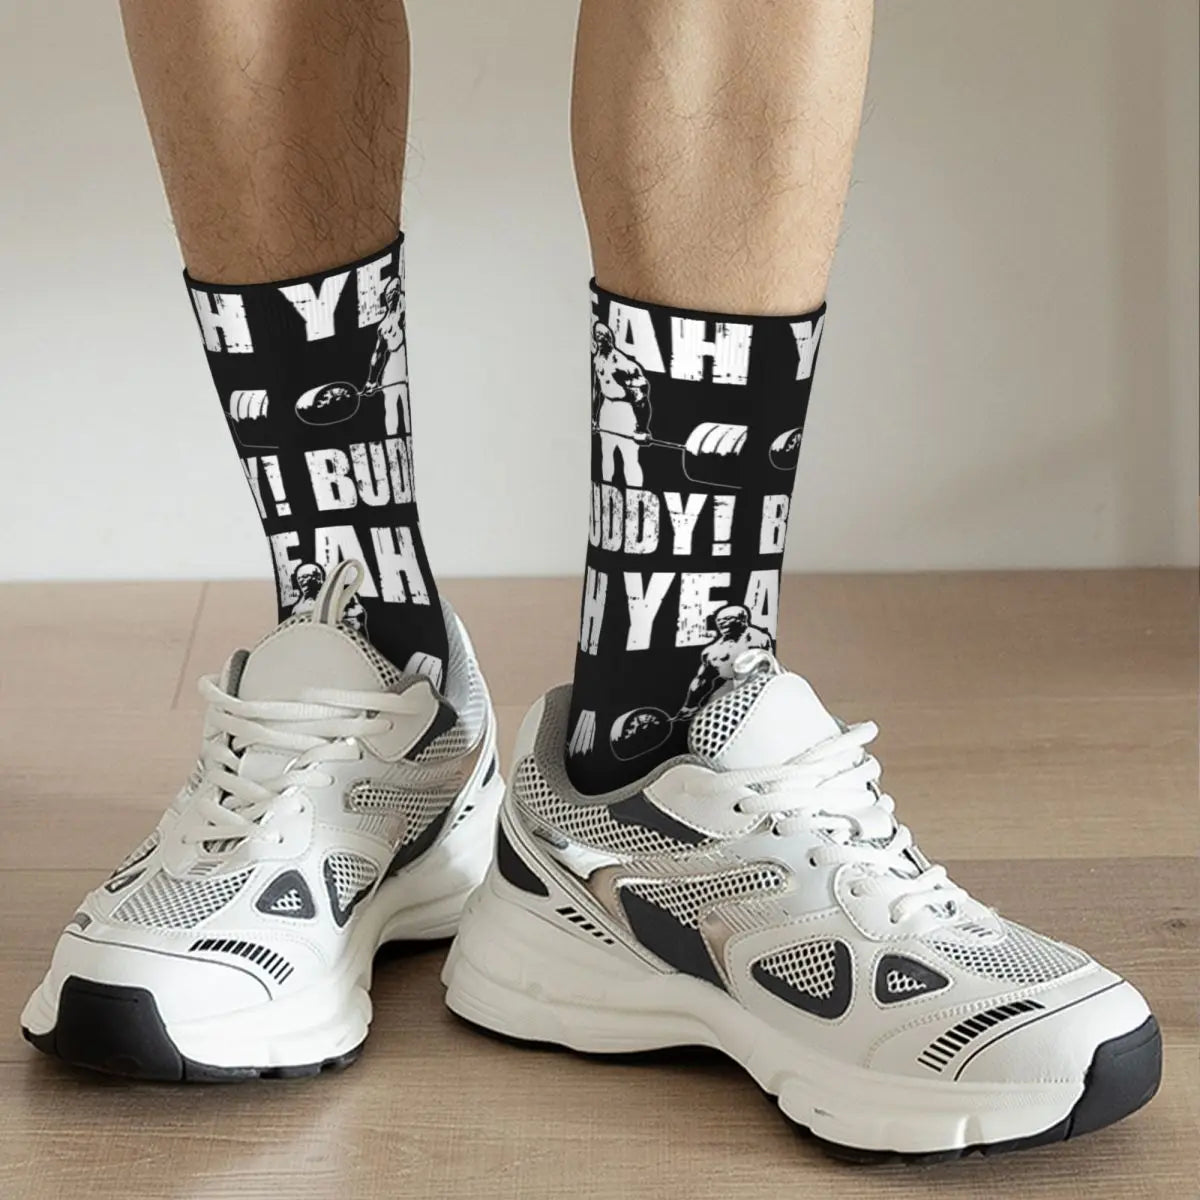 "YEAH BUDDY" Gym Socks (UNISEX)